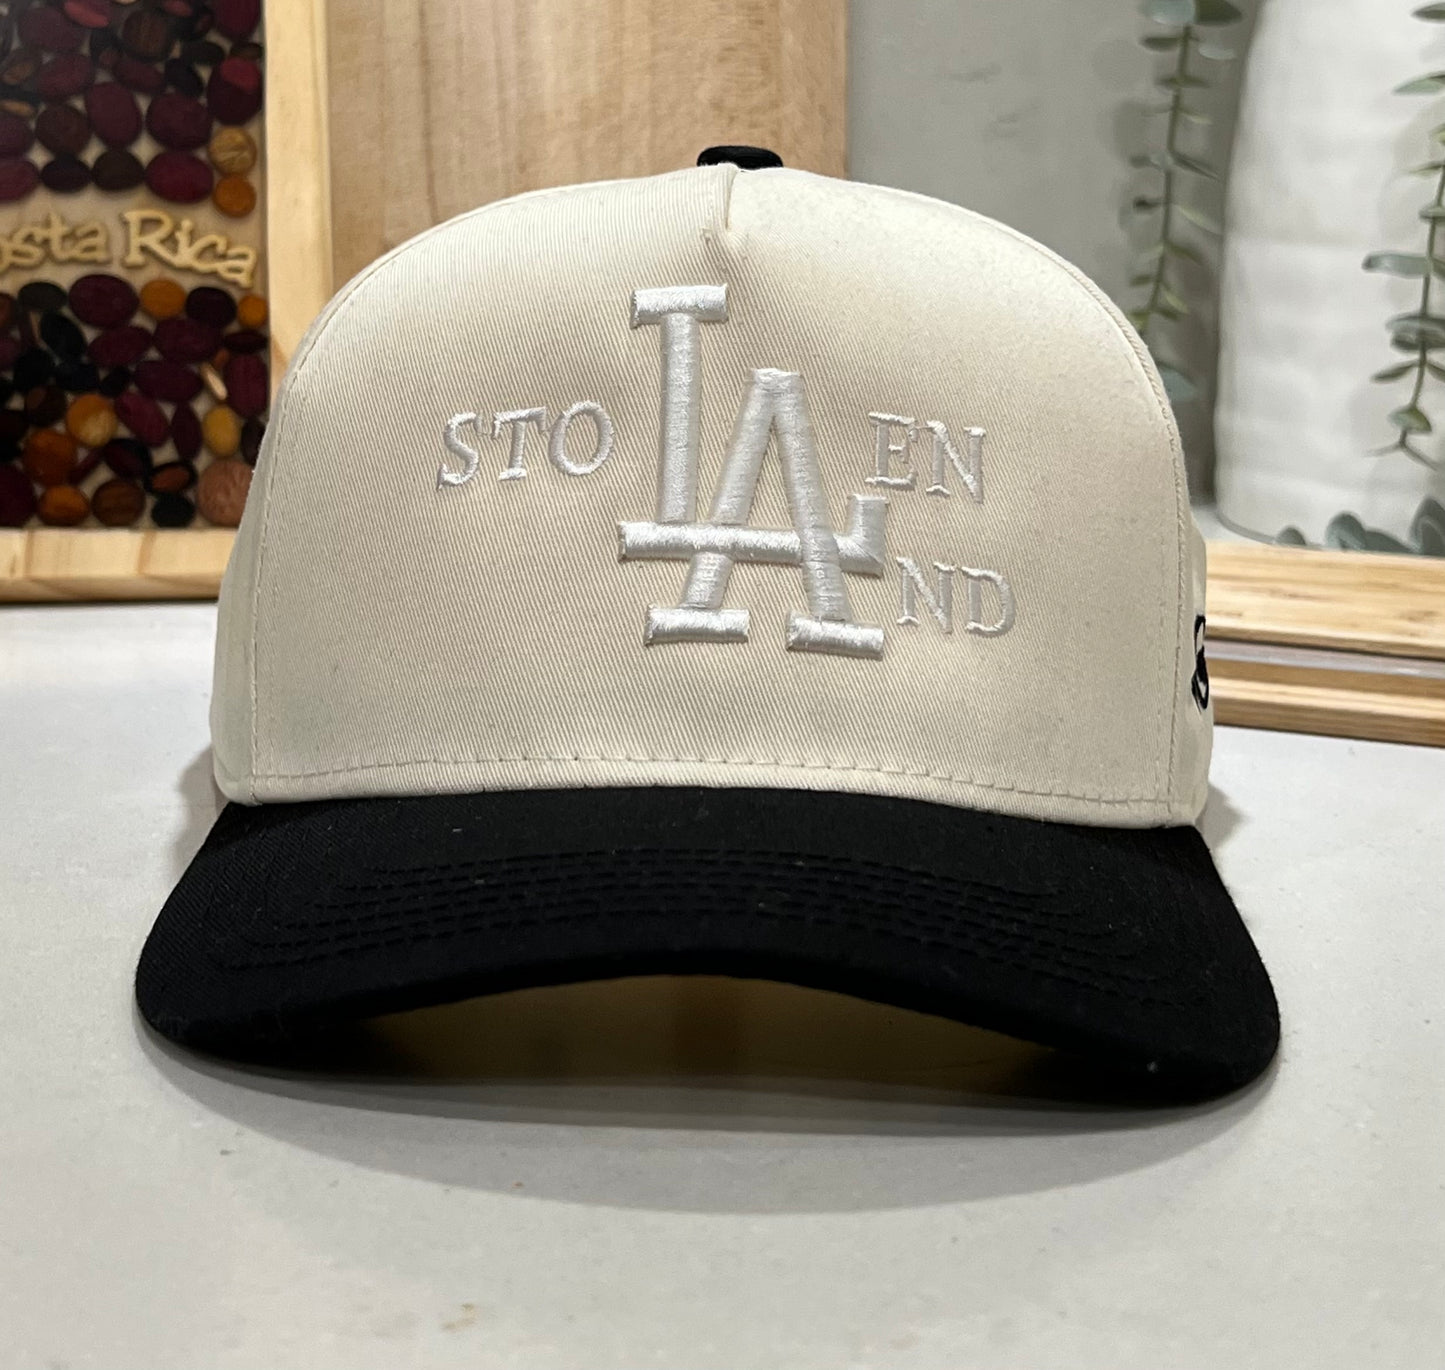 Stolen LAnd Hat ( white on white )